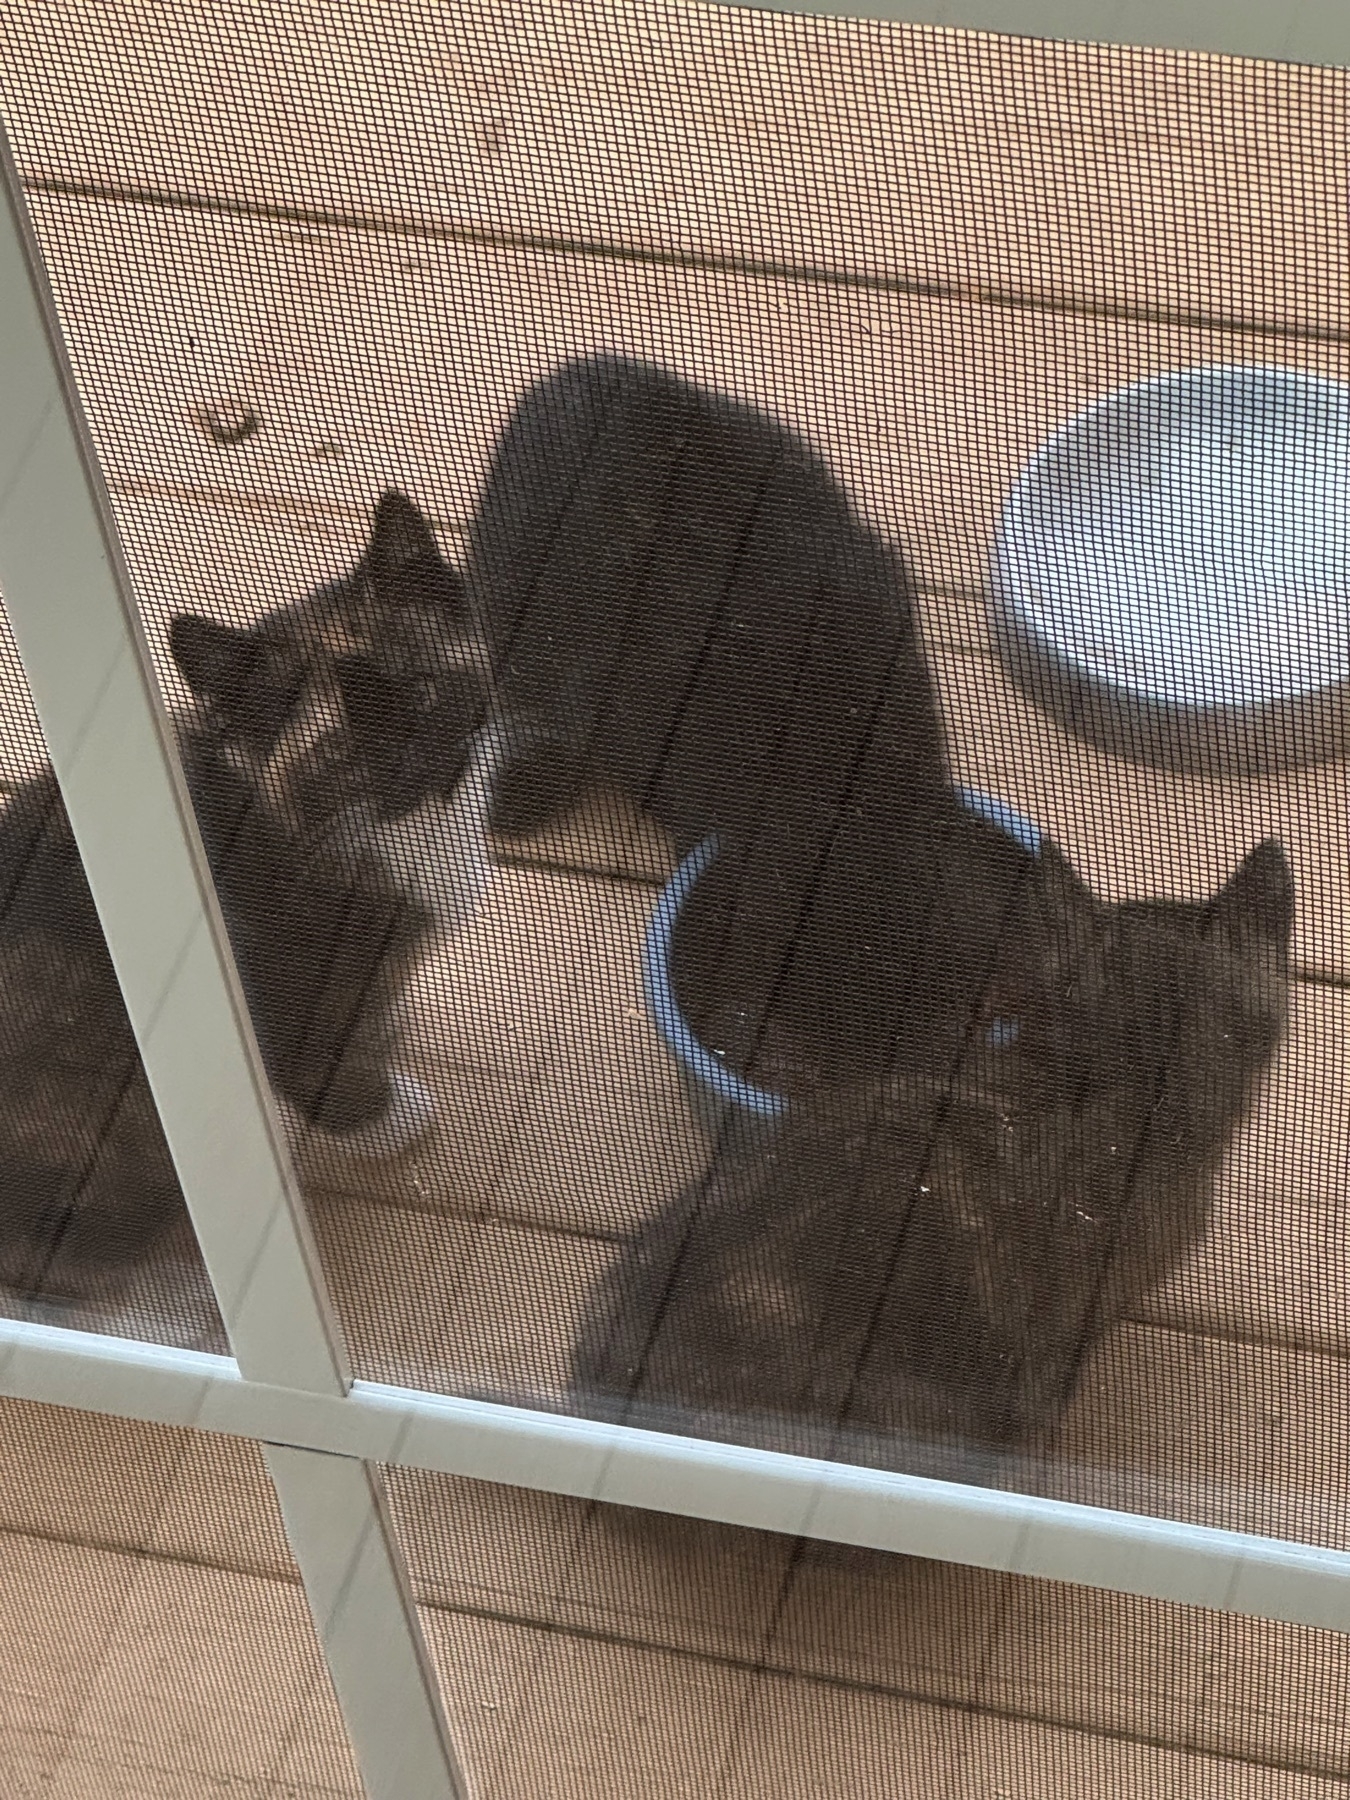 3 kittens eating